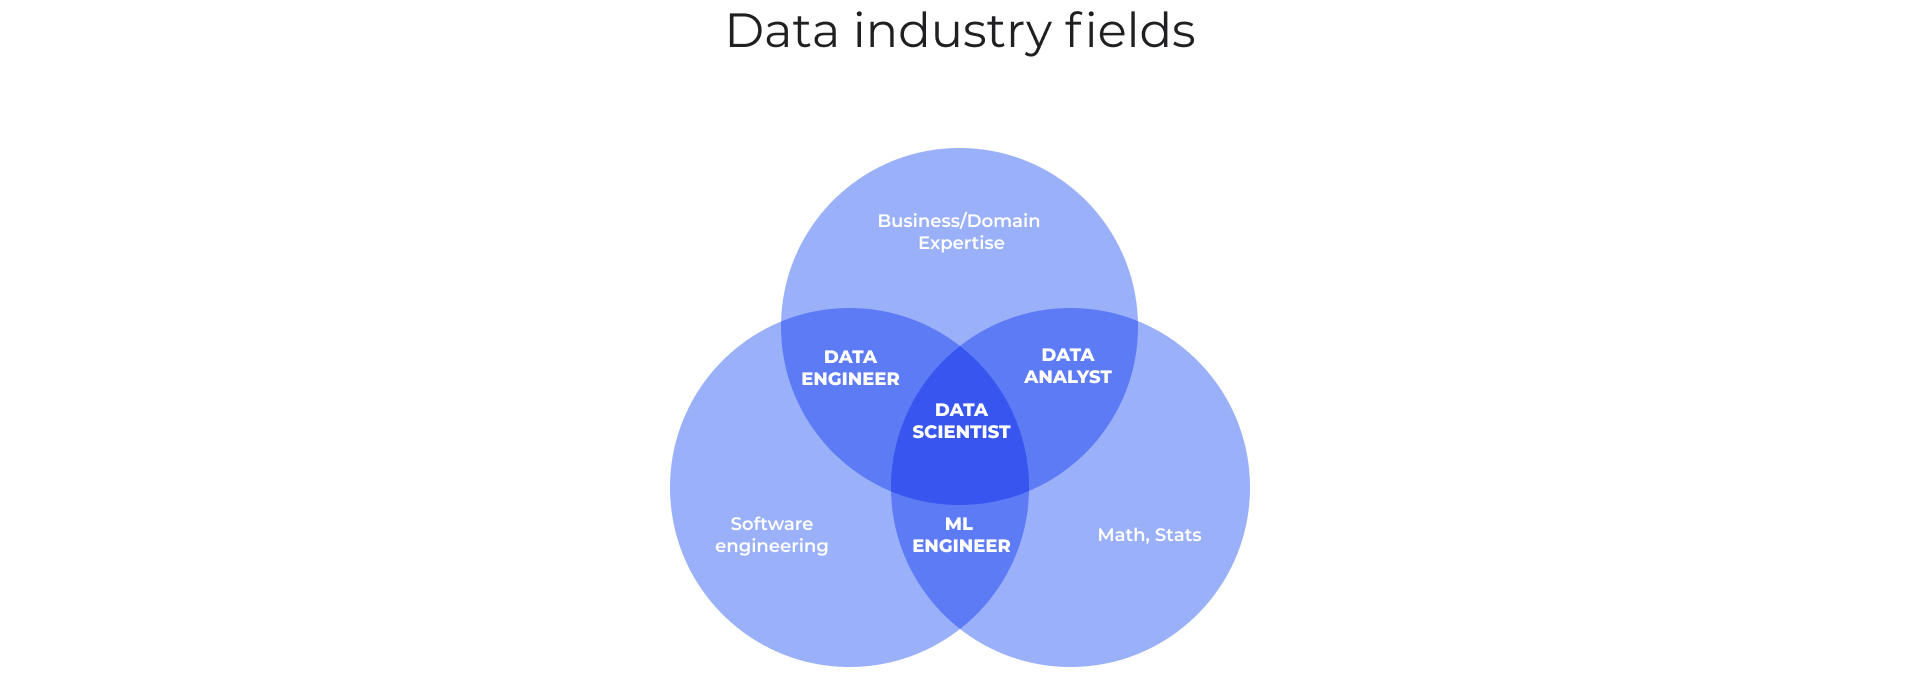 Data industry fields